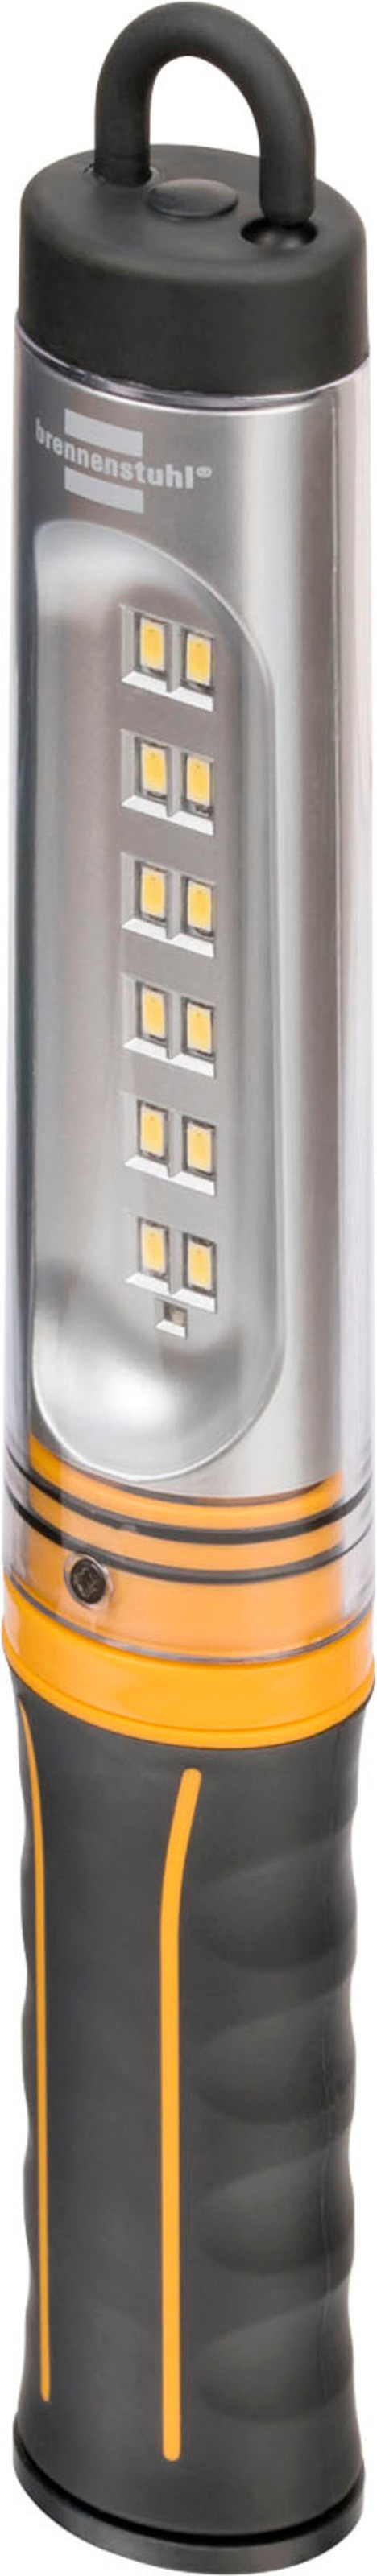 Brennenstuhl Handleuchte »WL 500 A«, mit integriertem Akku und USB-Kabel